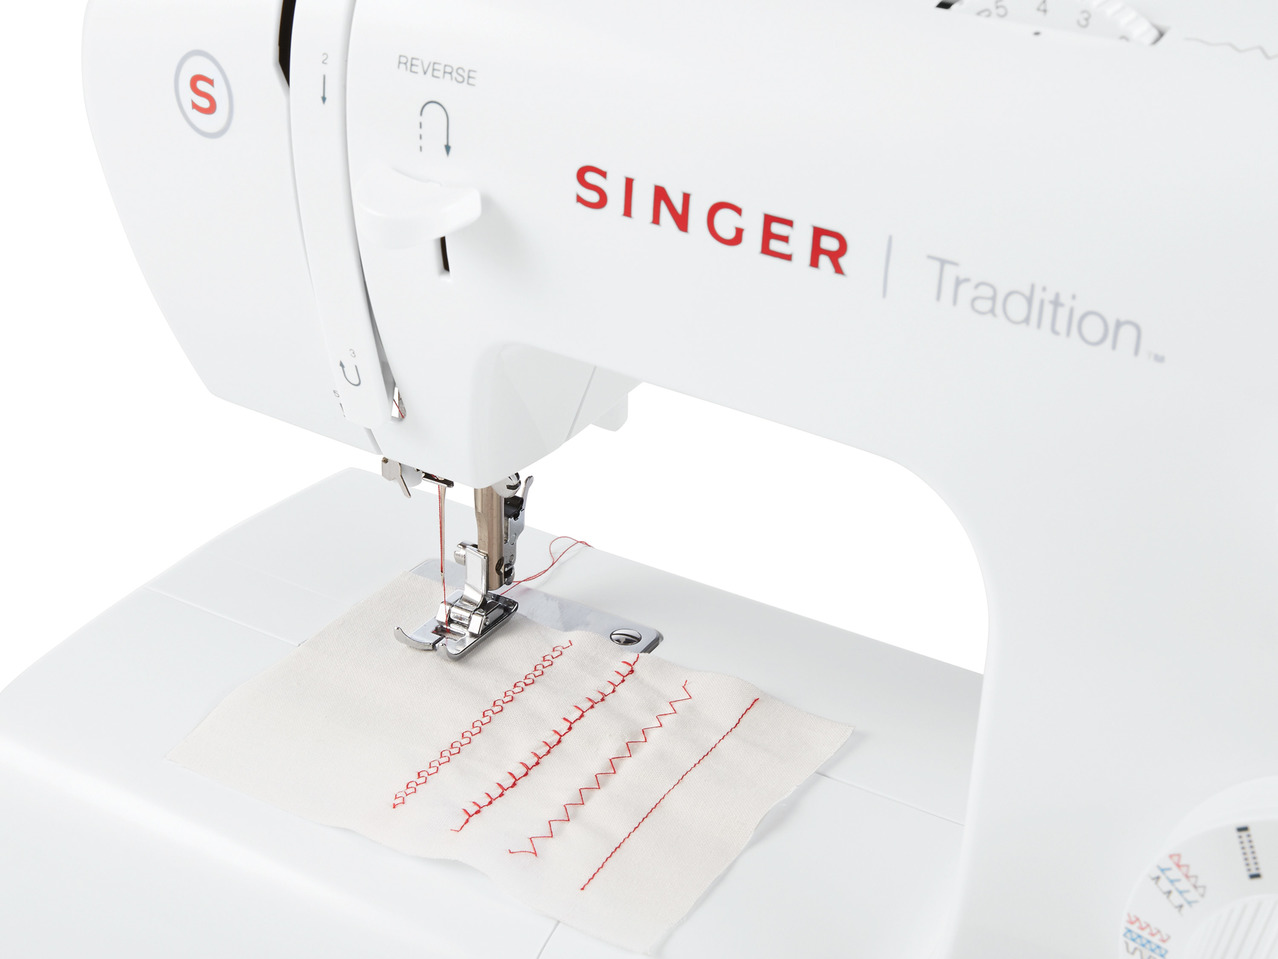 Singer Sewing Machine1